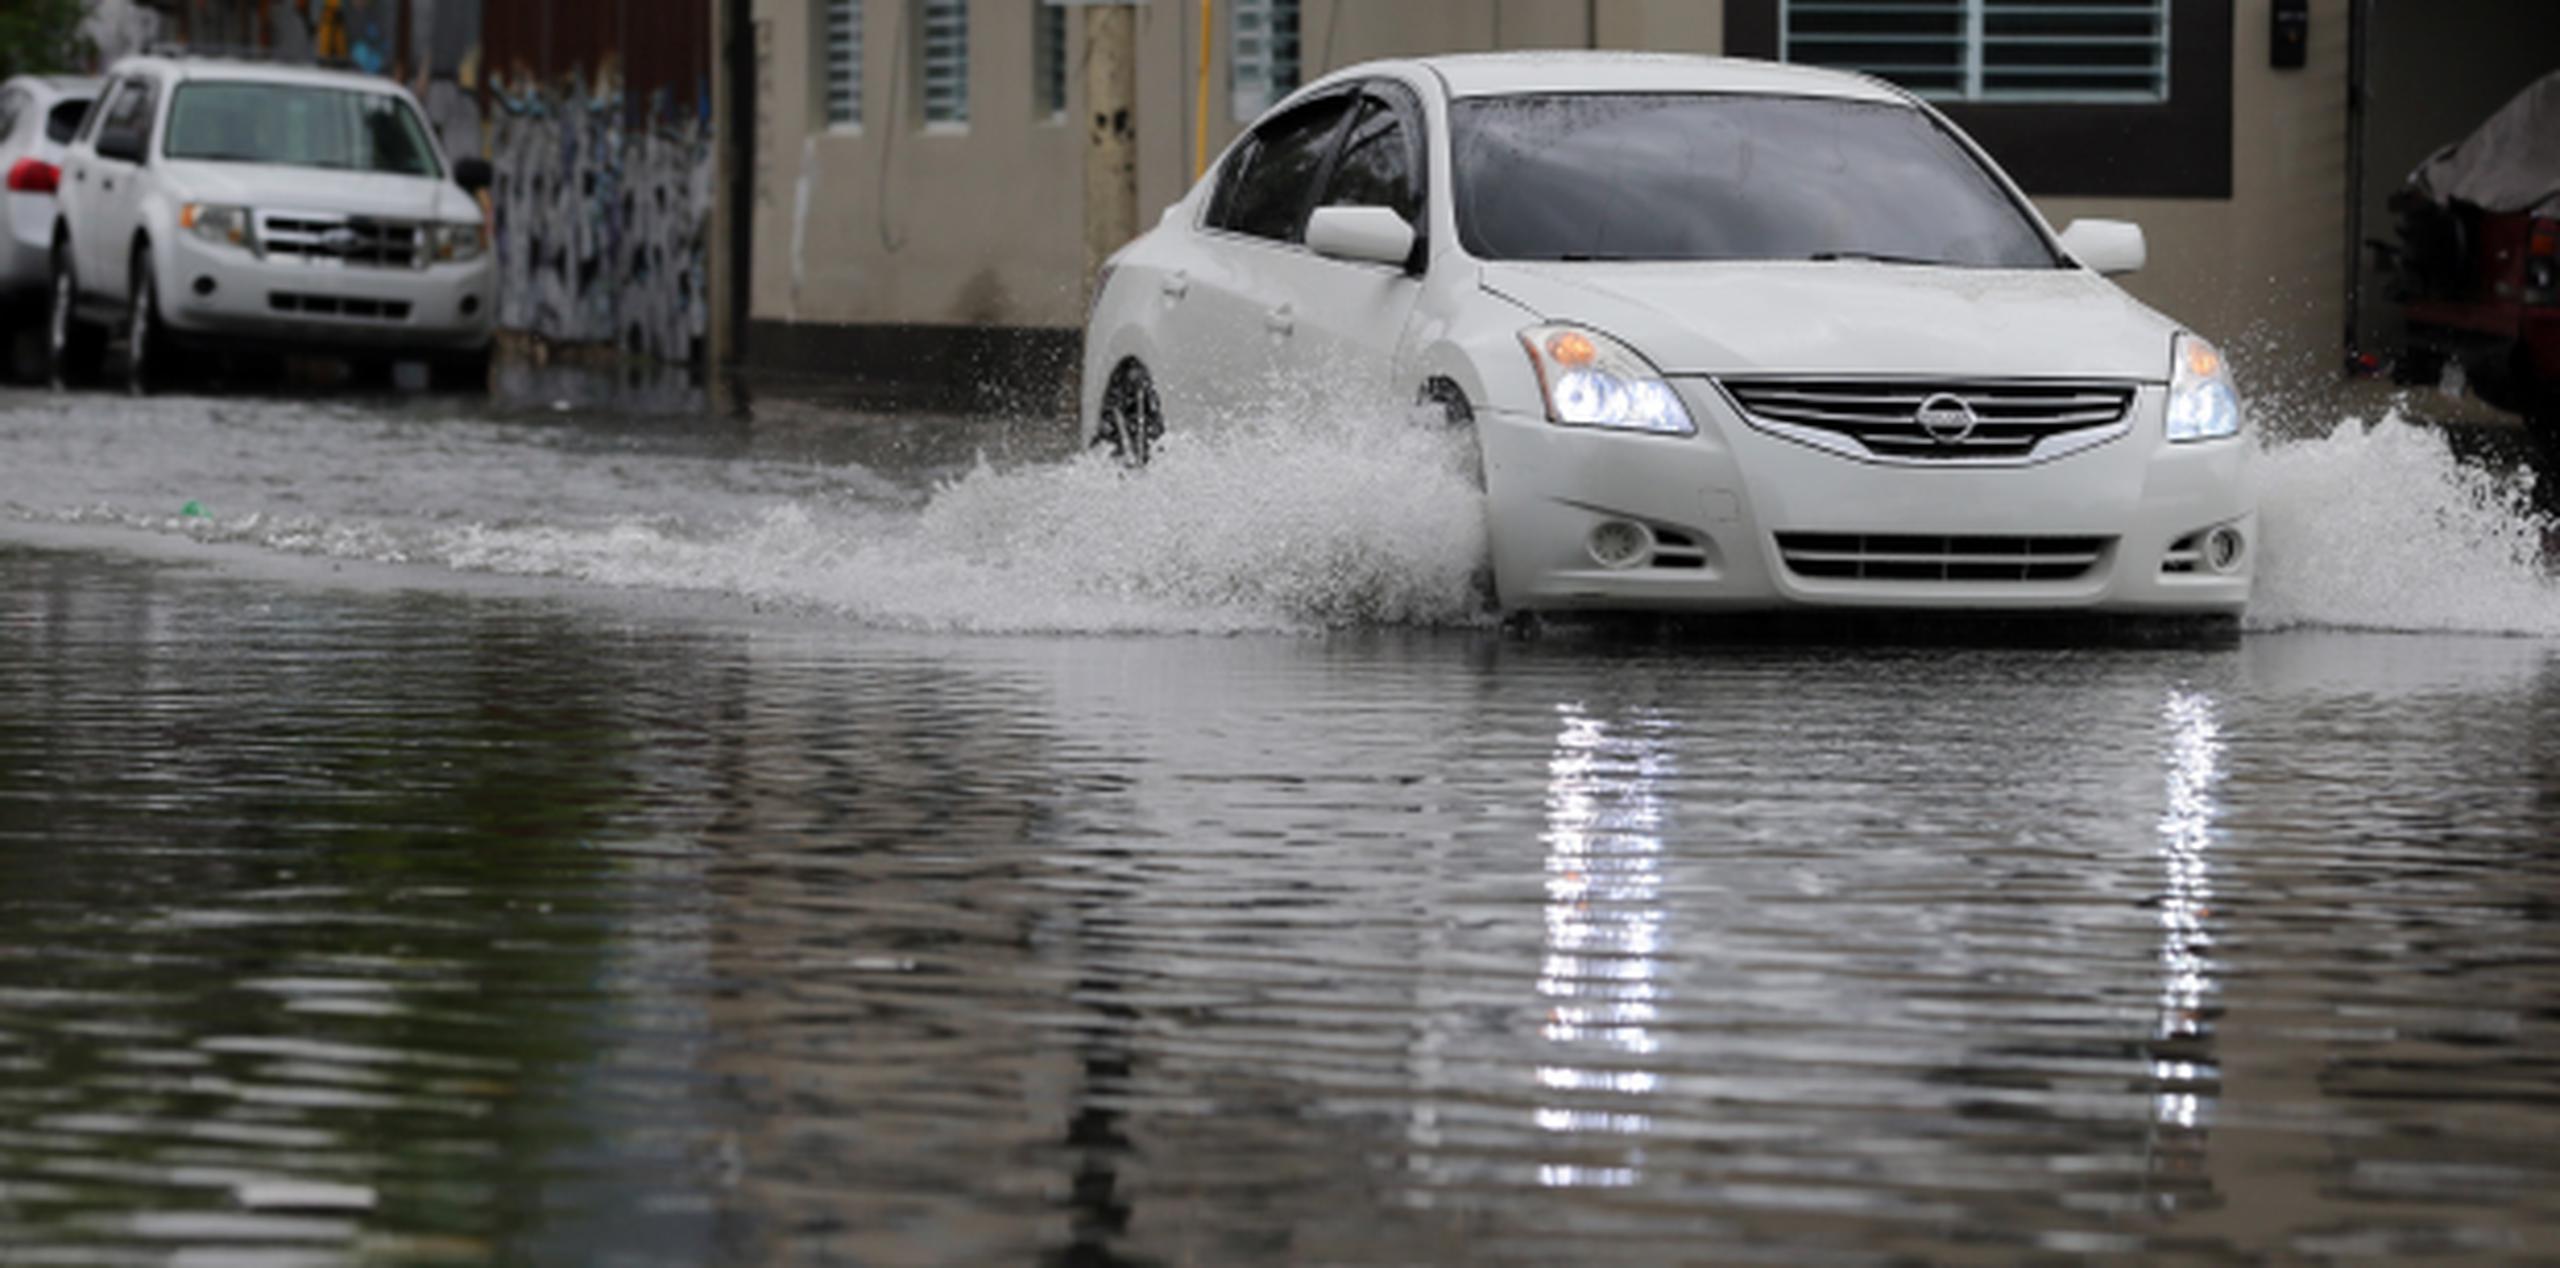 Las lluvias de estos días causaron inundaciones ayer y podrían causar hoy, según el SNM. (JUAN.MARTINEZ@GFRMEDIA.COM)